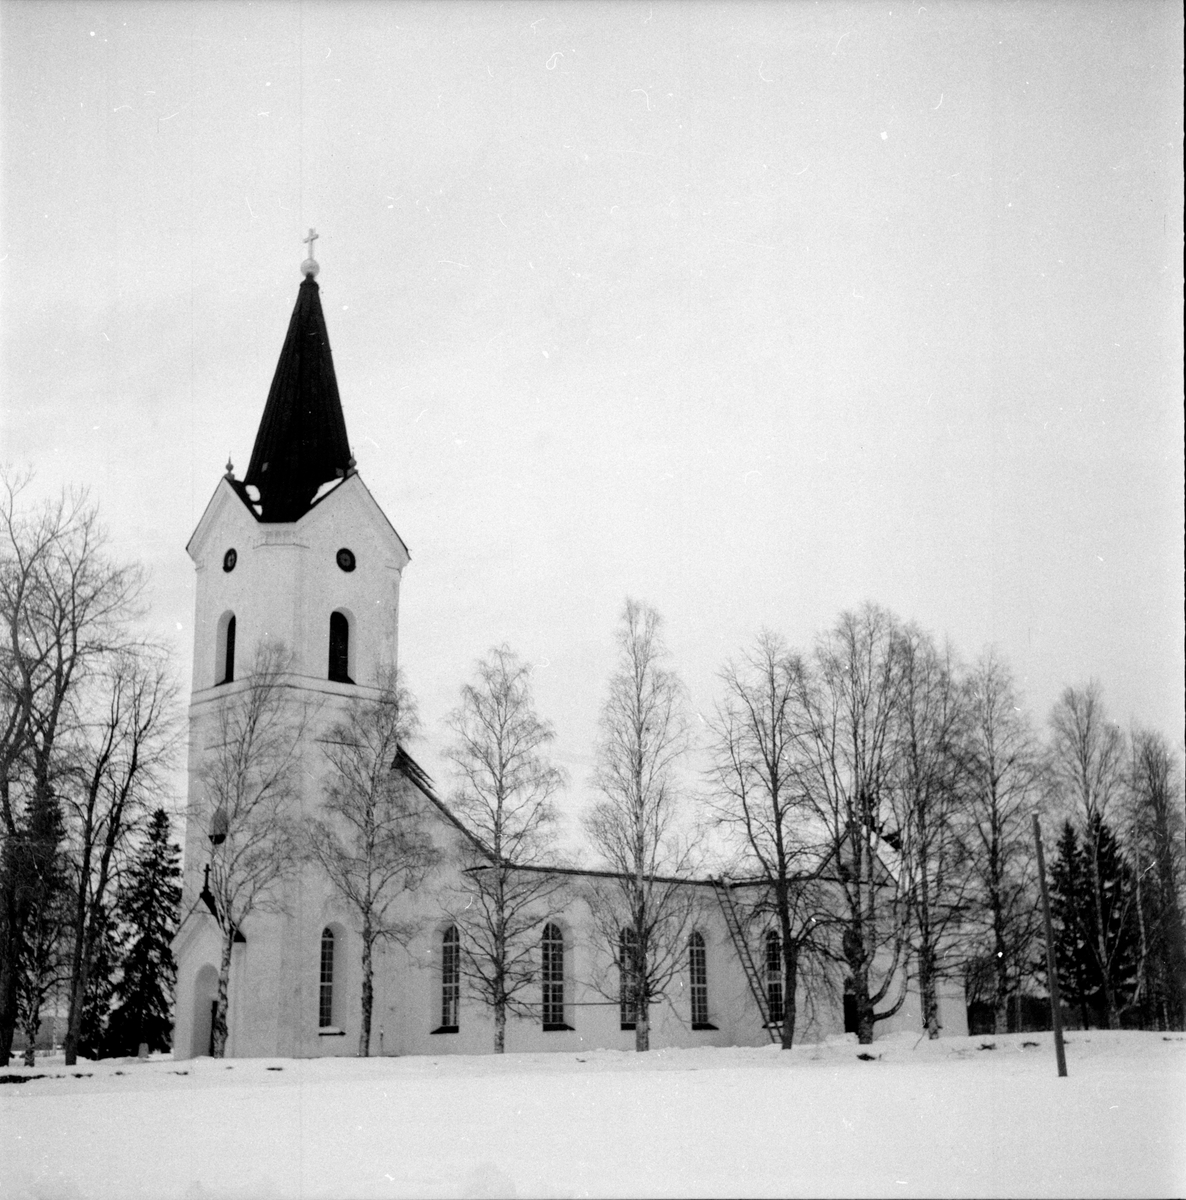 Ore kyrka, Furudal,
Orenappet gör upp,
22 Febr 1959